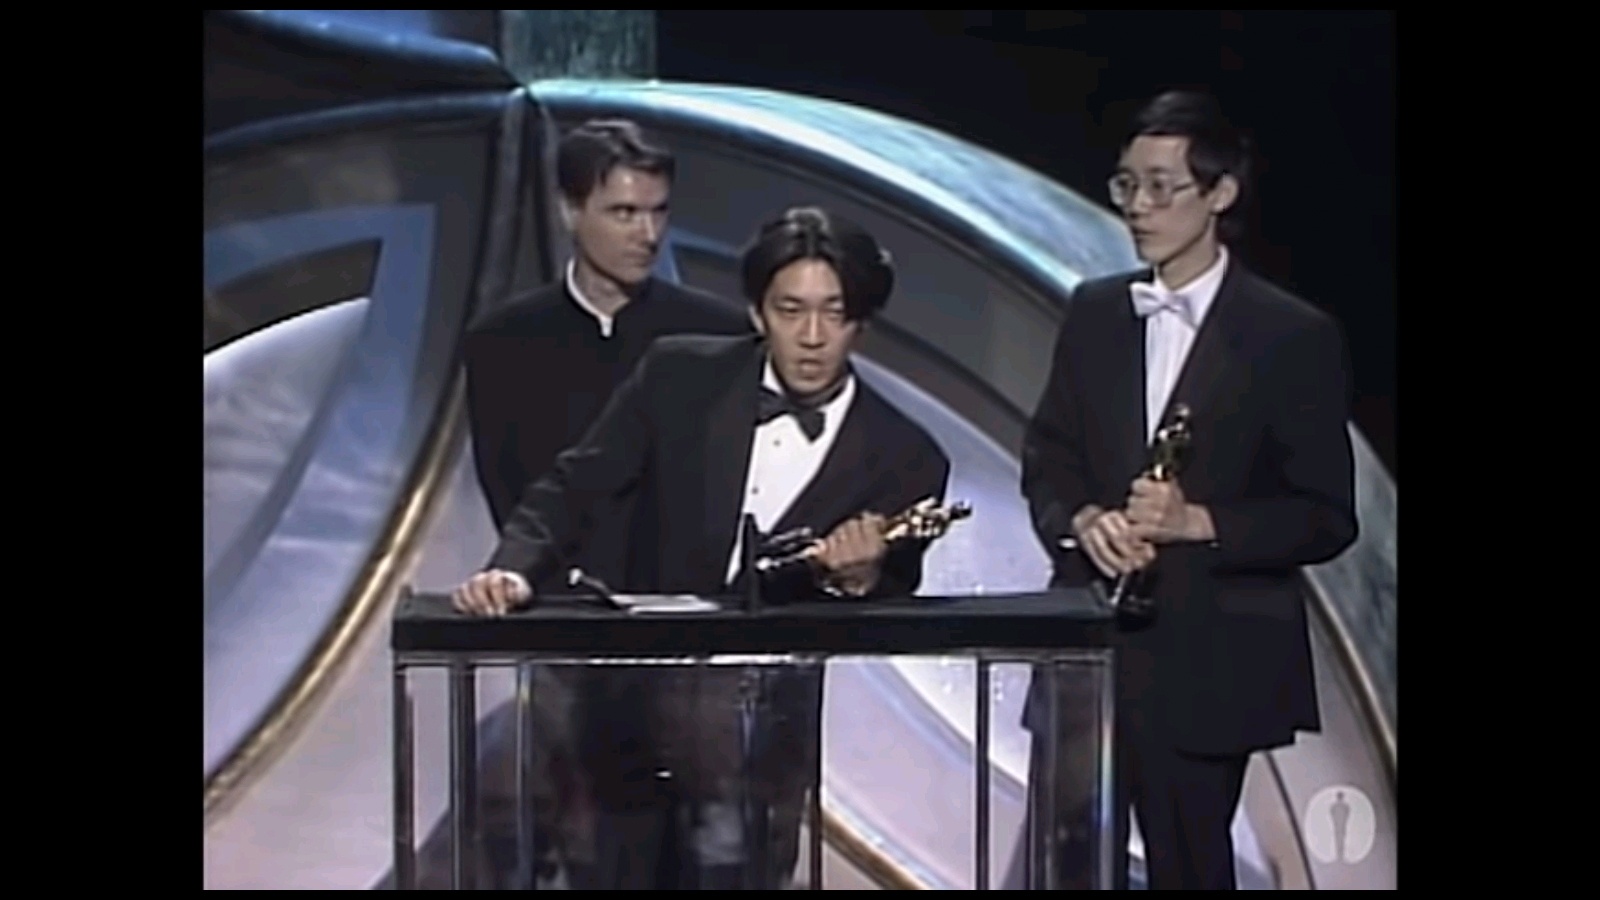 アカデミー賞の作曲賞の受賞式でスピーチを行う坂本龍一とその後ろに立つ共同受賞のデヴィッド・バーンと蘇聡